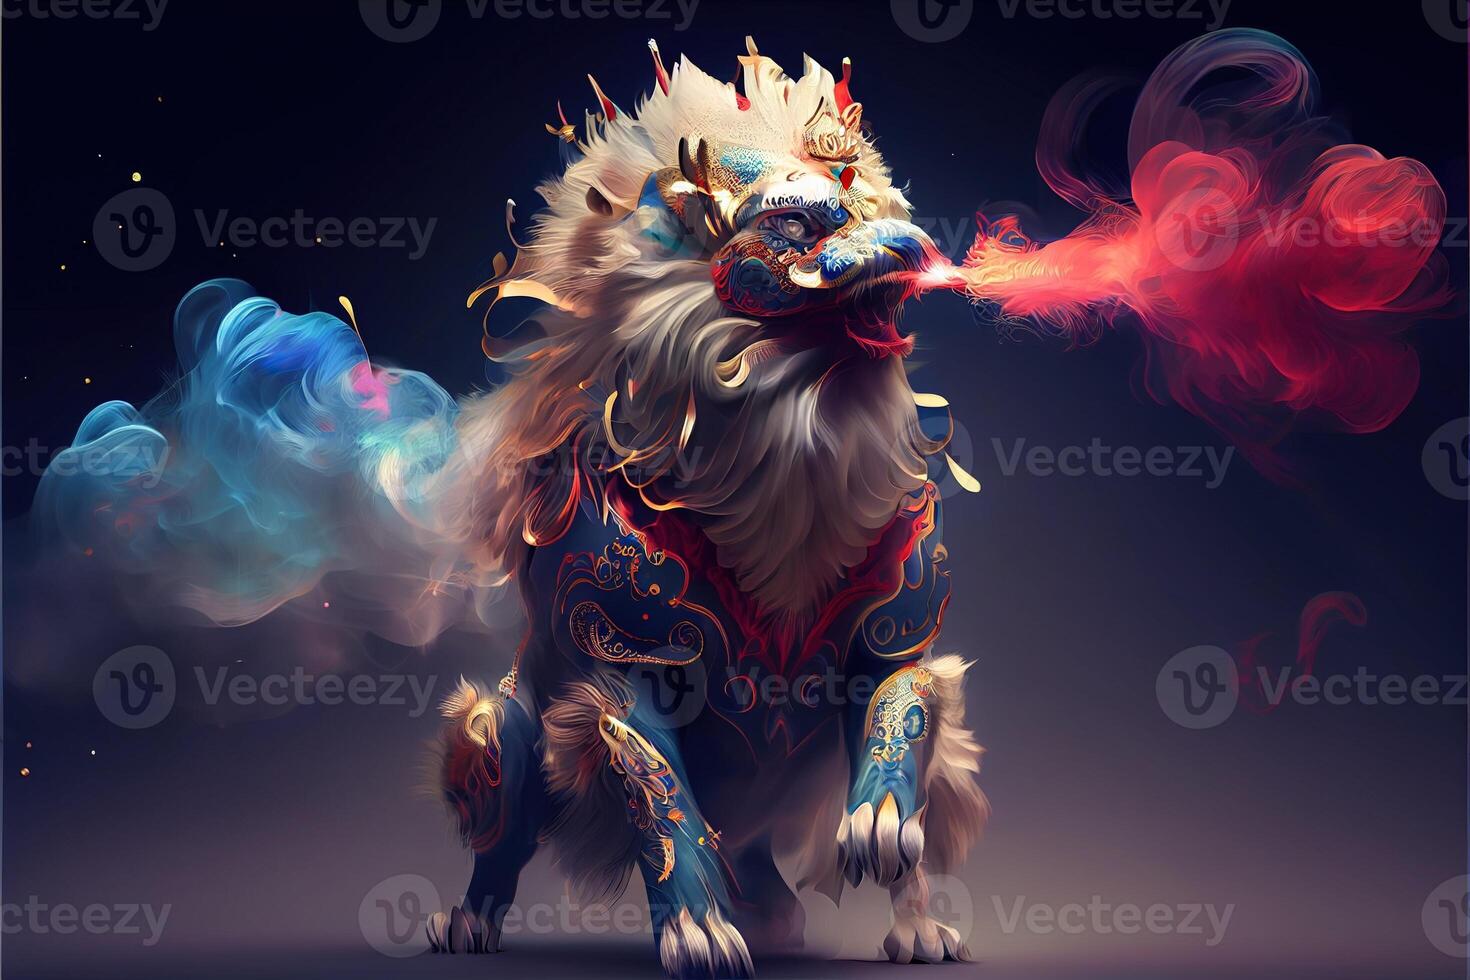 generativ ai Illustration von anthropomorph traditionell Chinesisch Löwe tanzen, groß runden Augen, rundlich Körper, Chinesisch Frühling Festival, leuchtend Partikel, Rauch foto